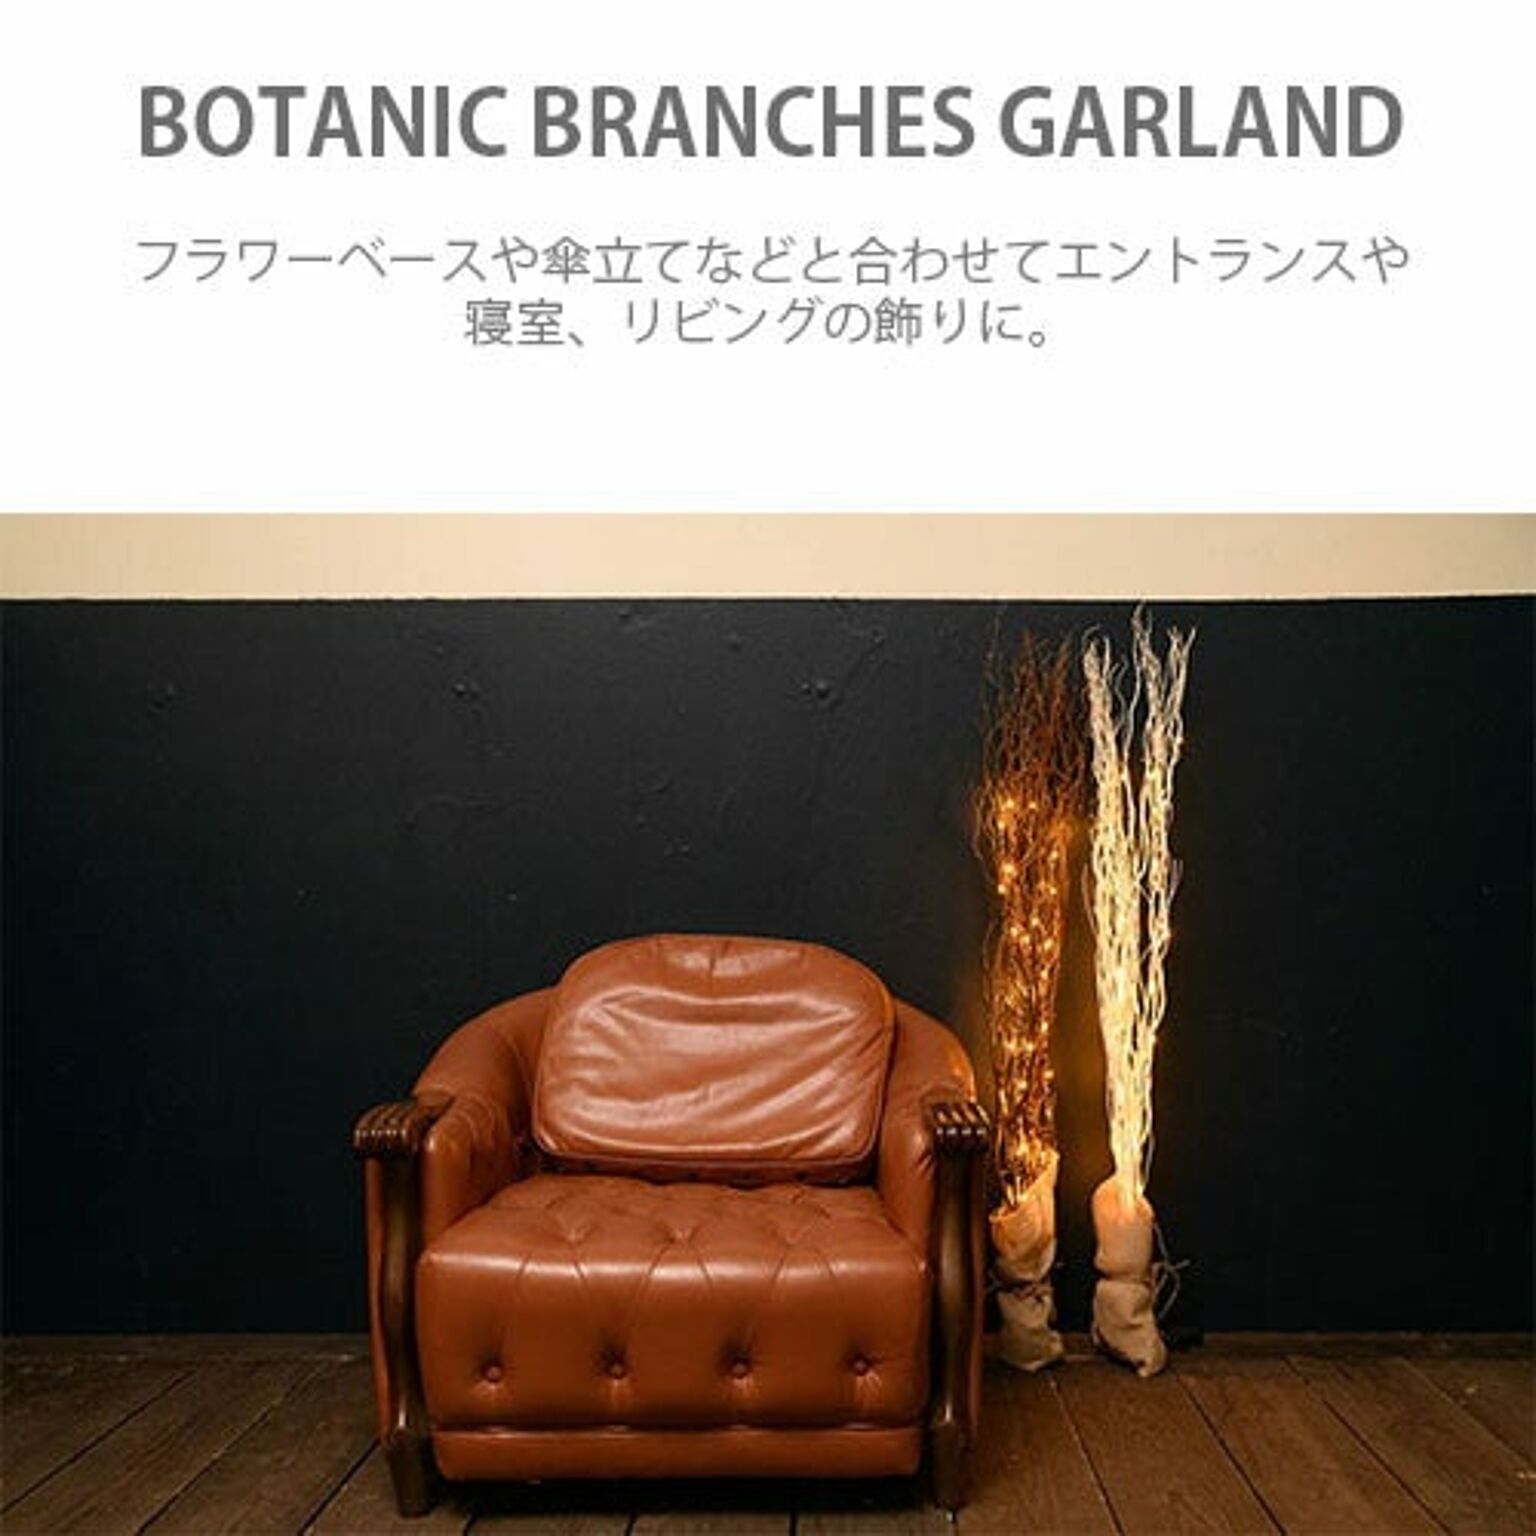 スワン電器 BOTANIC BRANCHES GARLAND ボタニック ブランチーズ ガーランド AOL-632  LEDイルミネーション/LEDツリー 通販 RoomClipショッピング